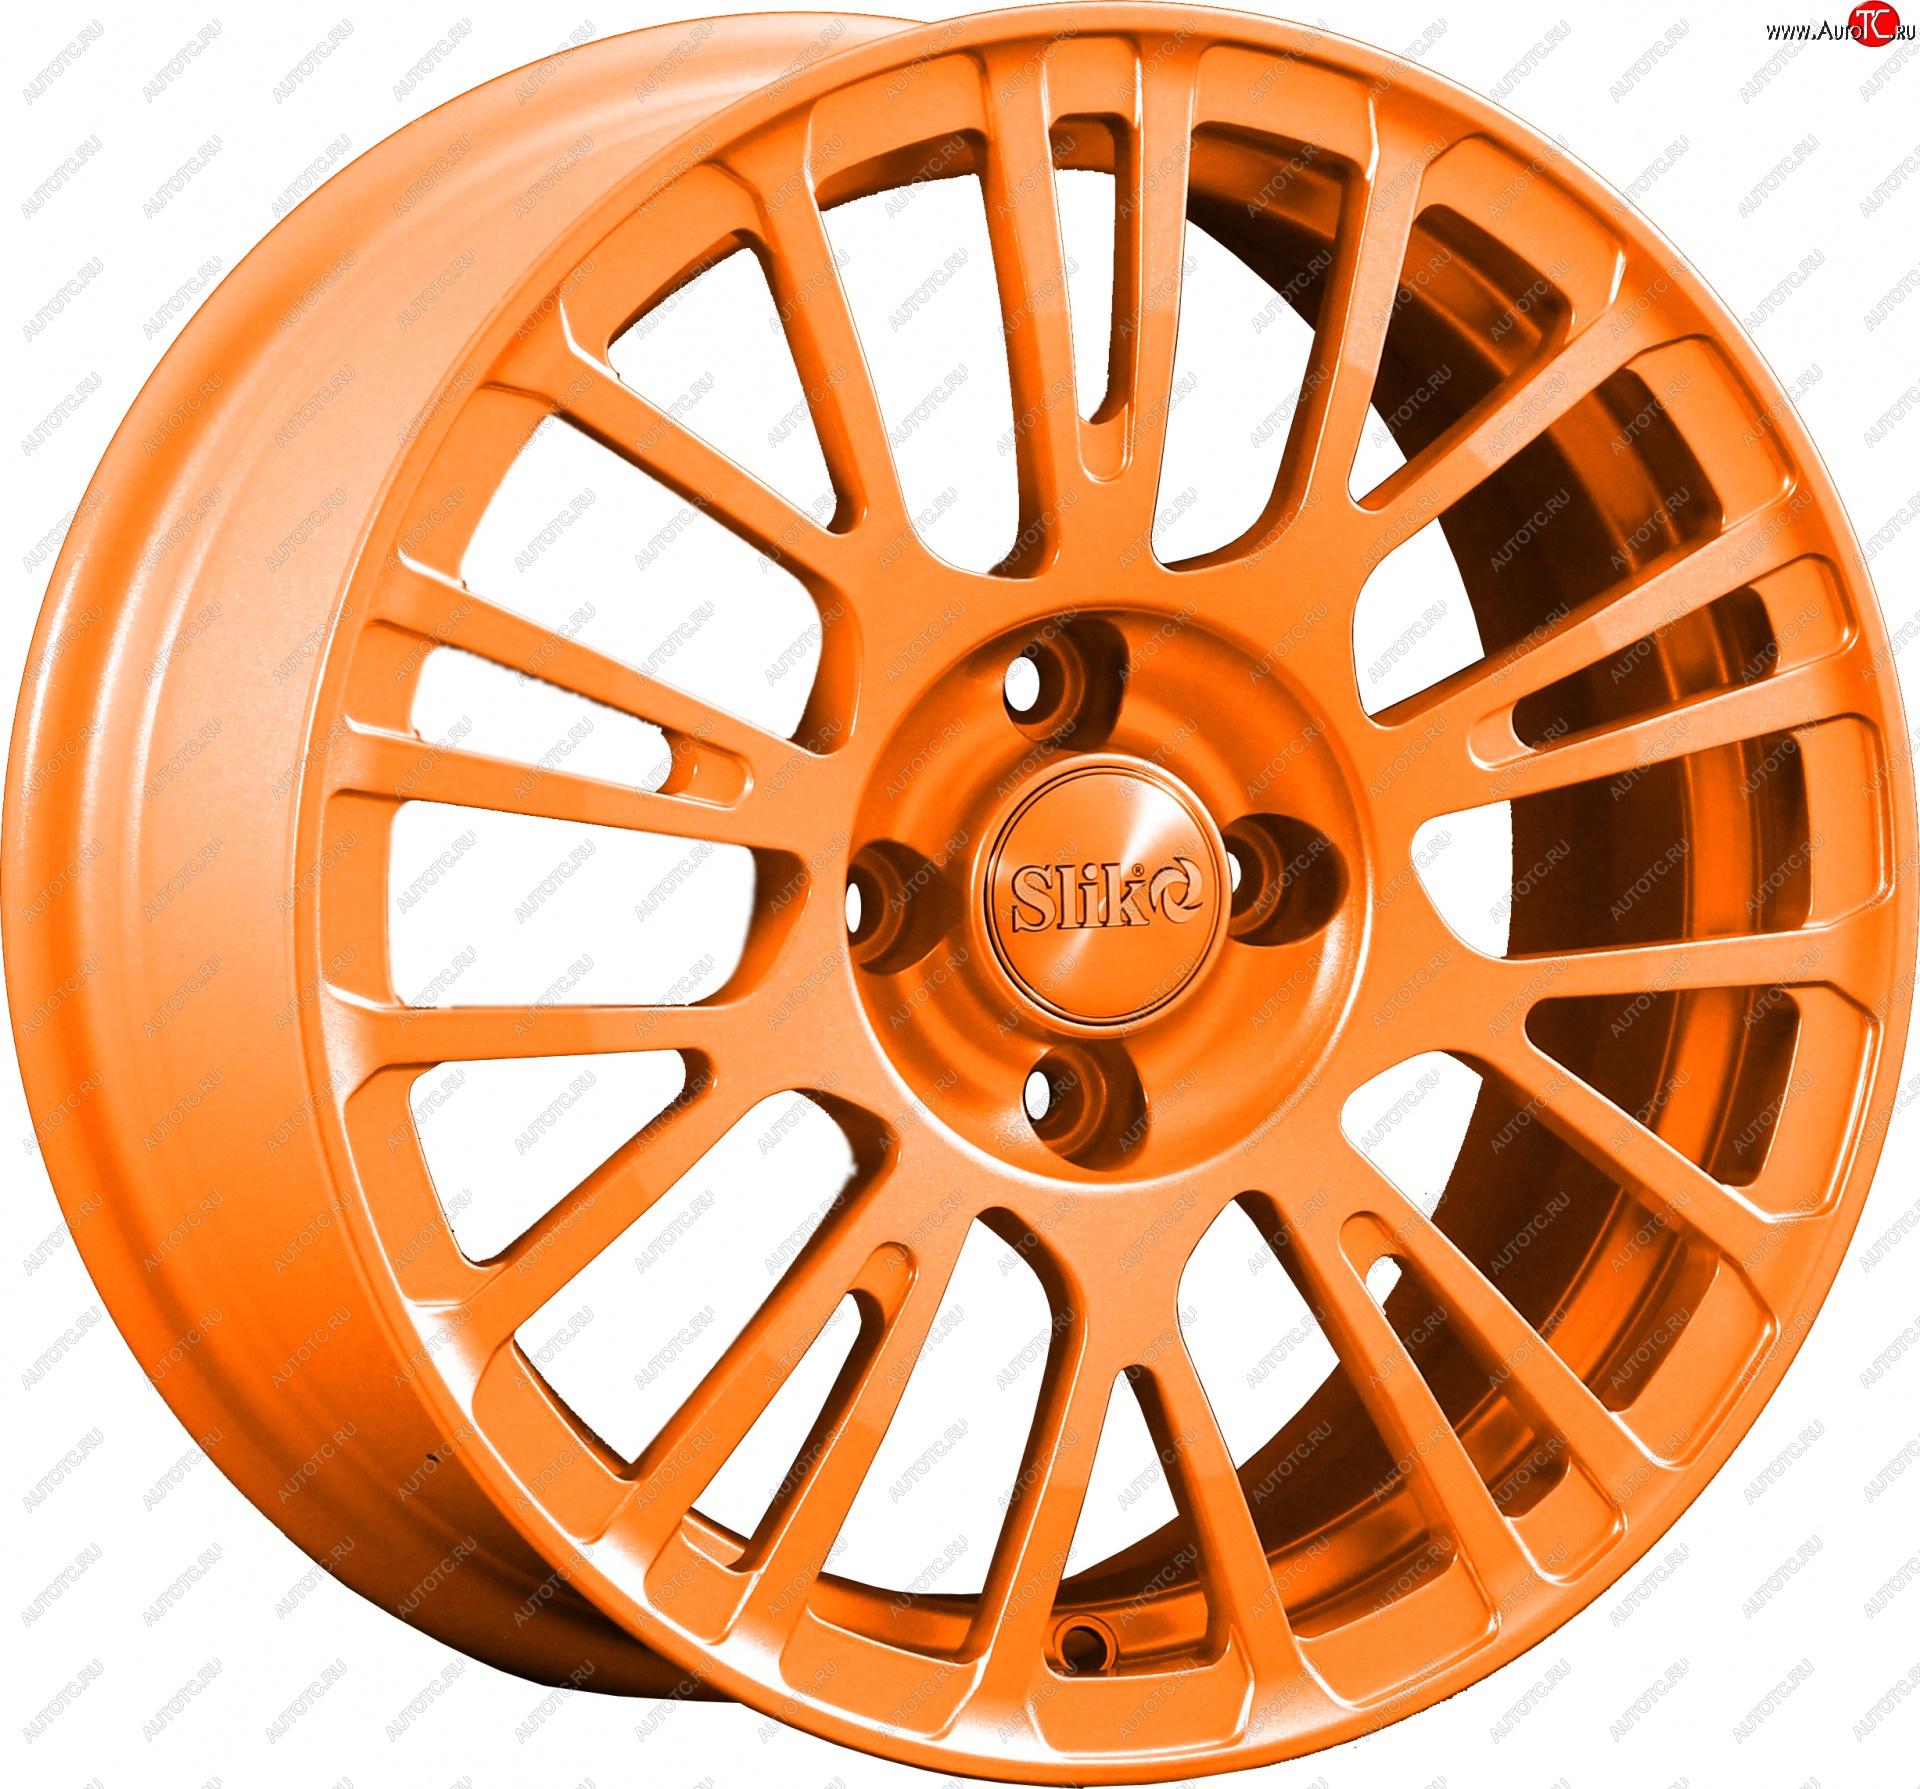 11 899 р. Кованый диск Slik Classik 6.5x15 (Ярко-оранжевый)   (Цвет: Ярко-оранжевый)